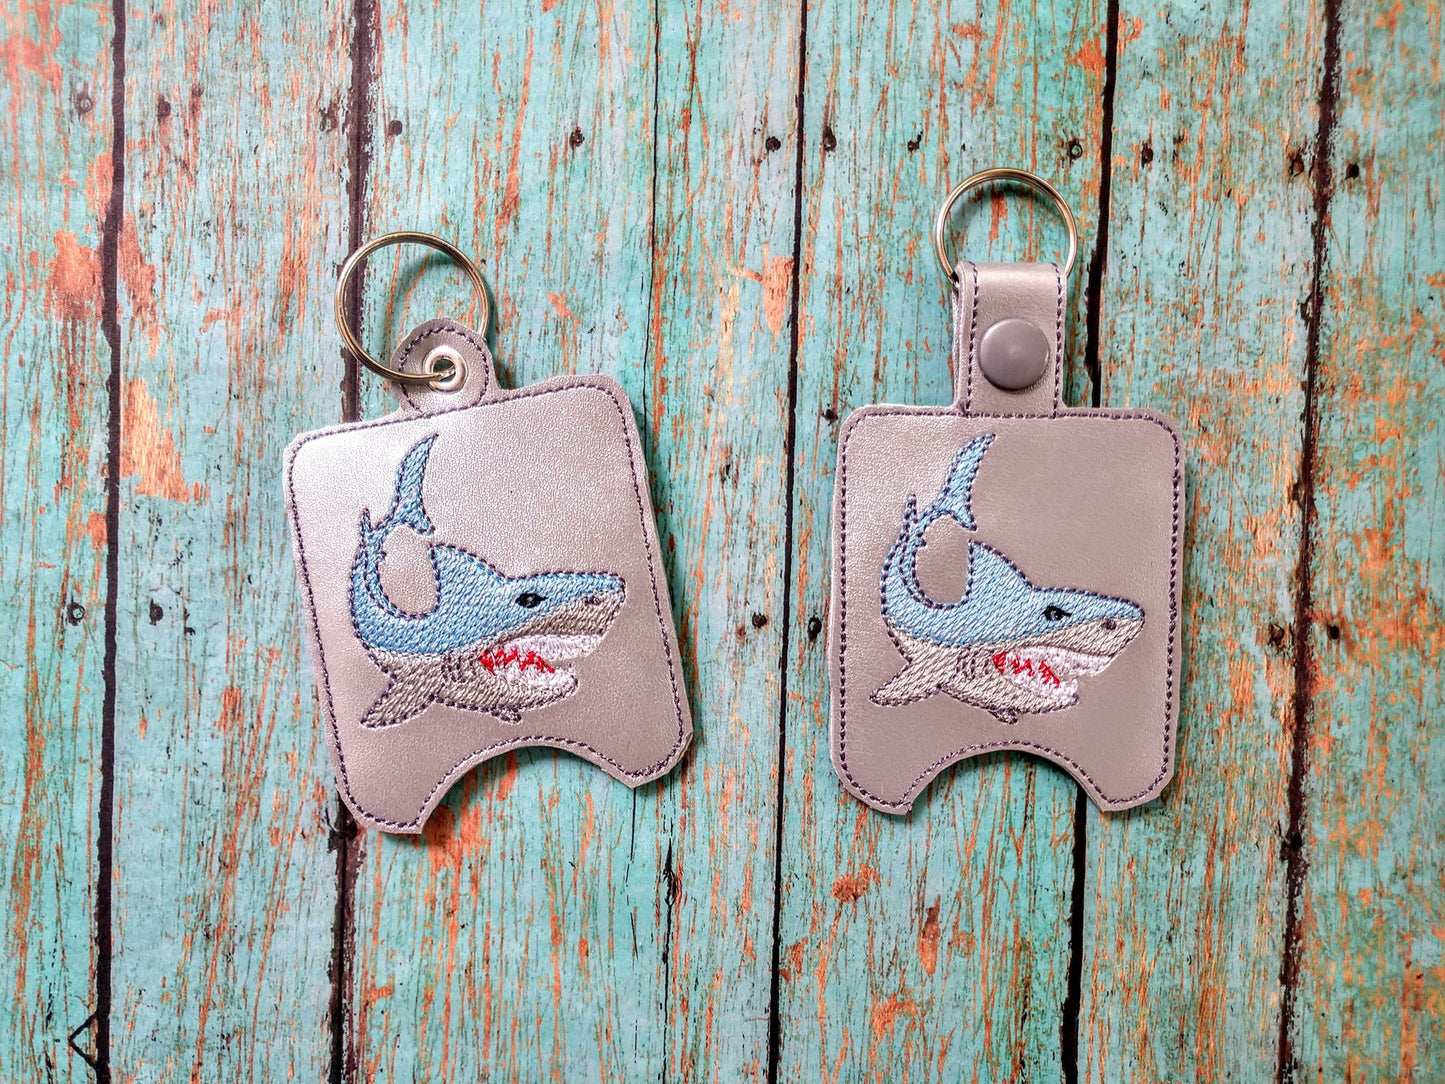 Shark Sanitizer Holders - DIGITAL Embroidery DESIGN